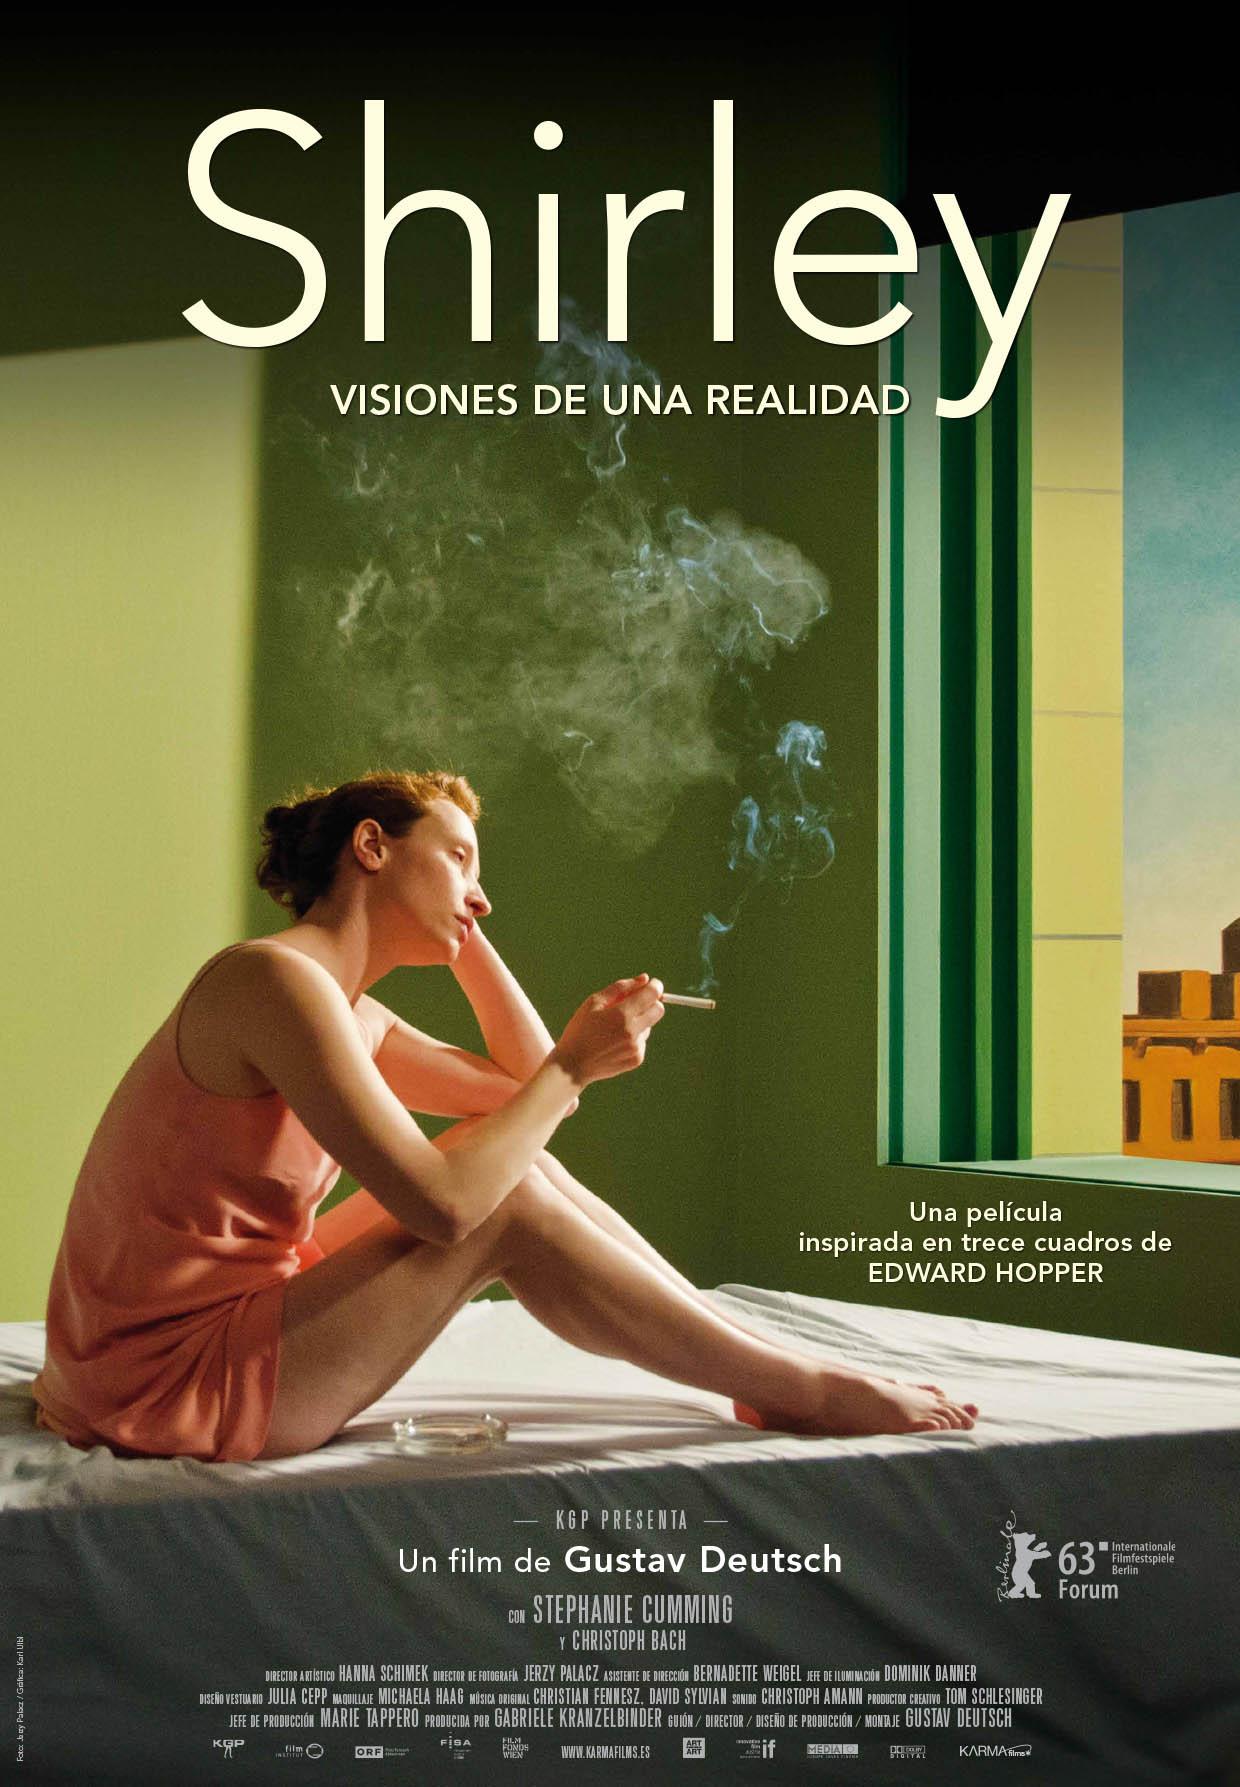 Постер фильма Ширли: Образы реальности | Shirley: Visions of Reality